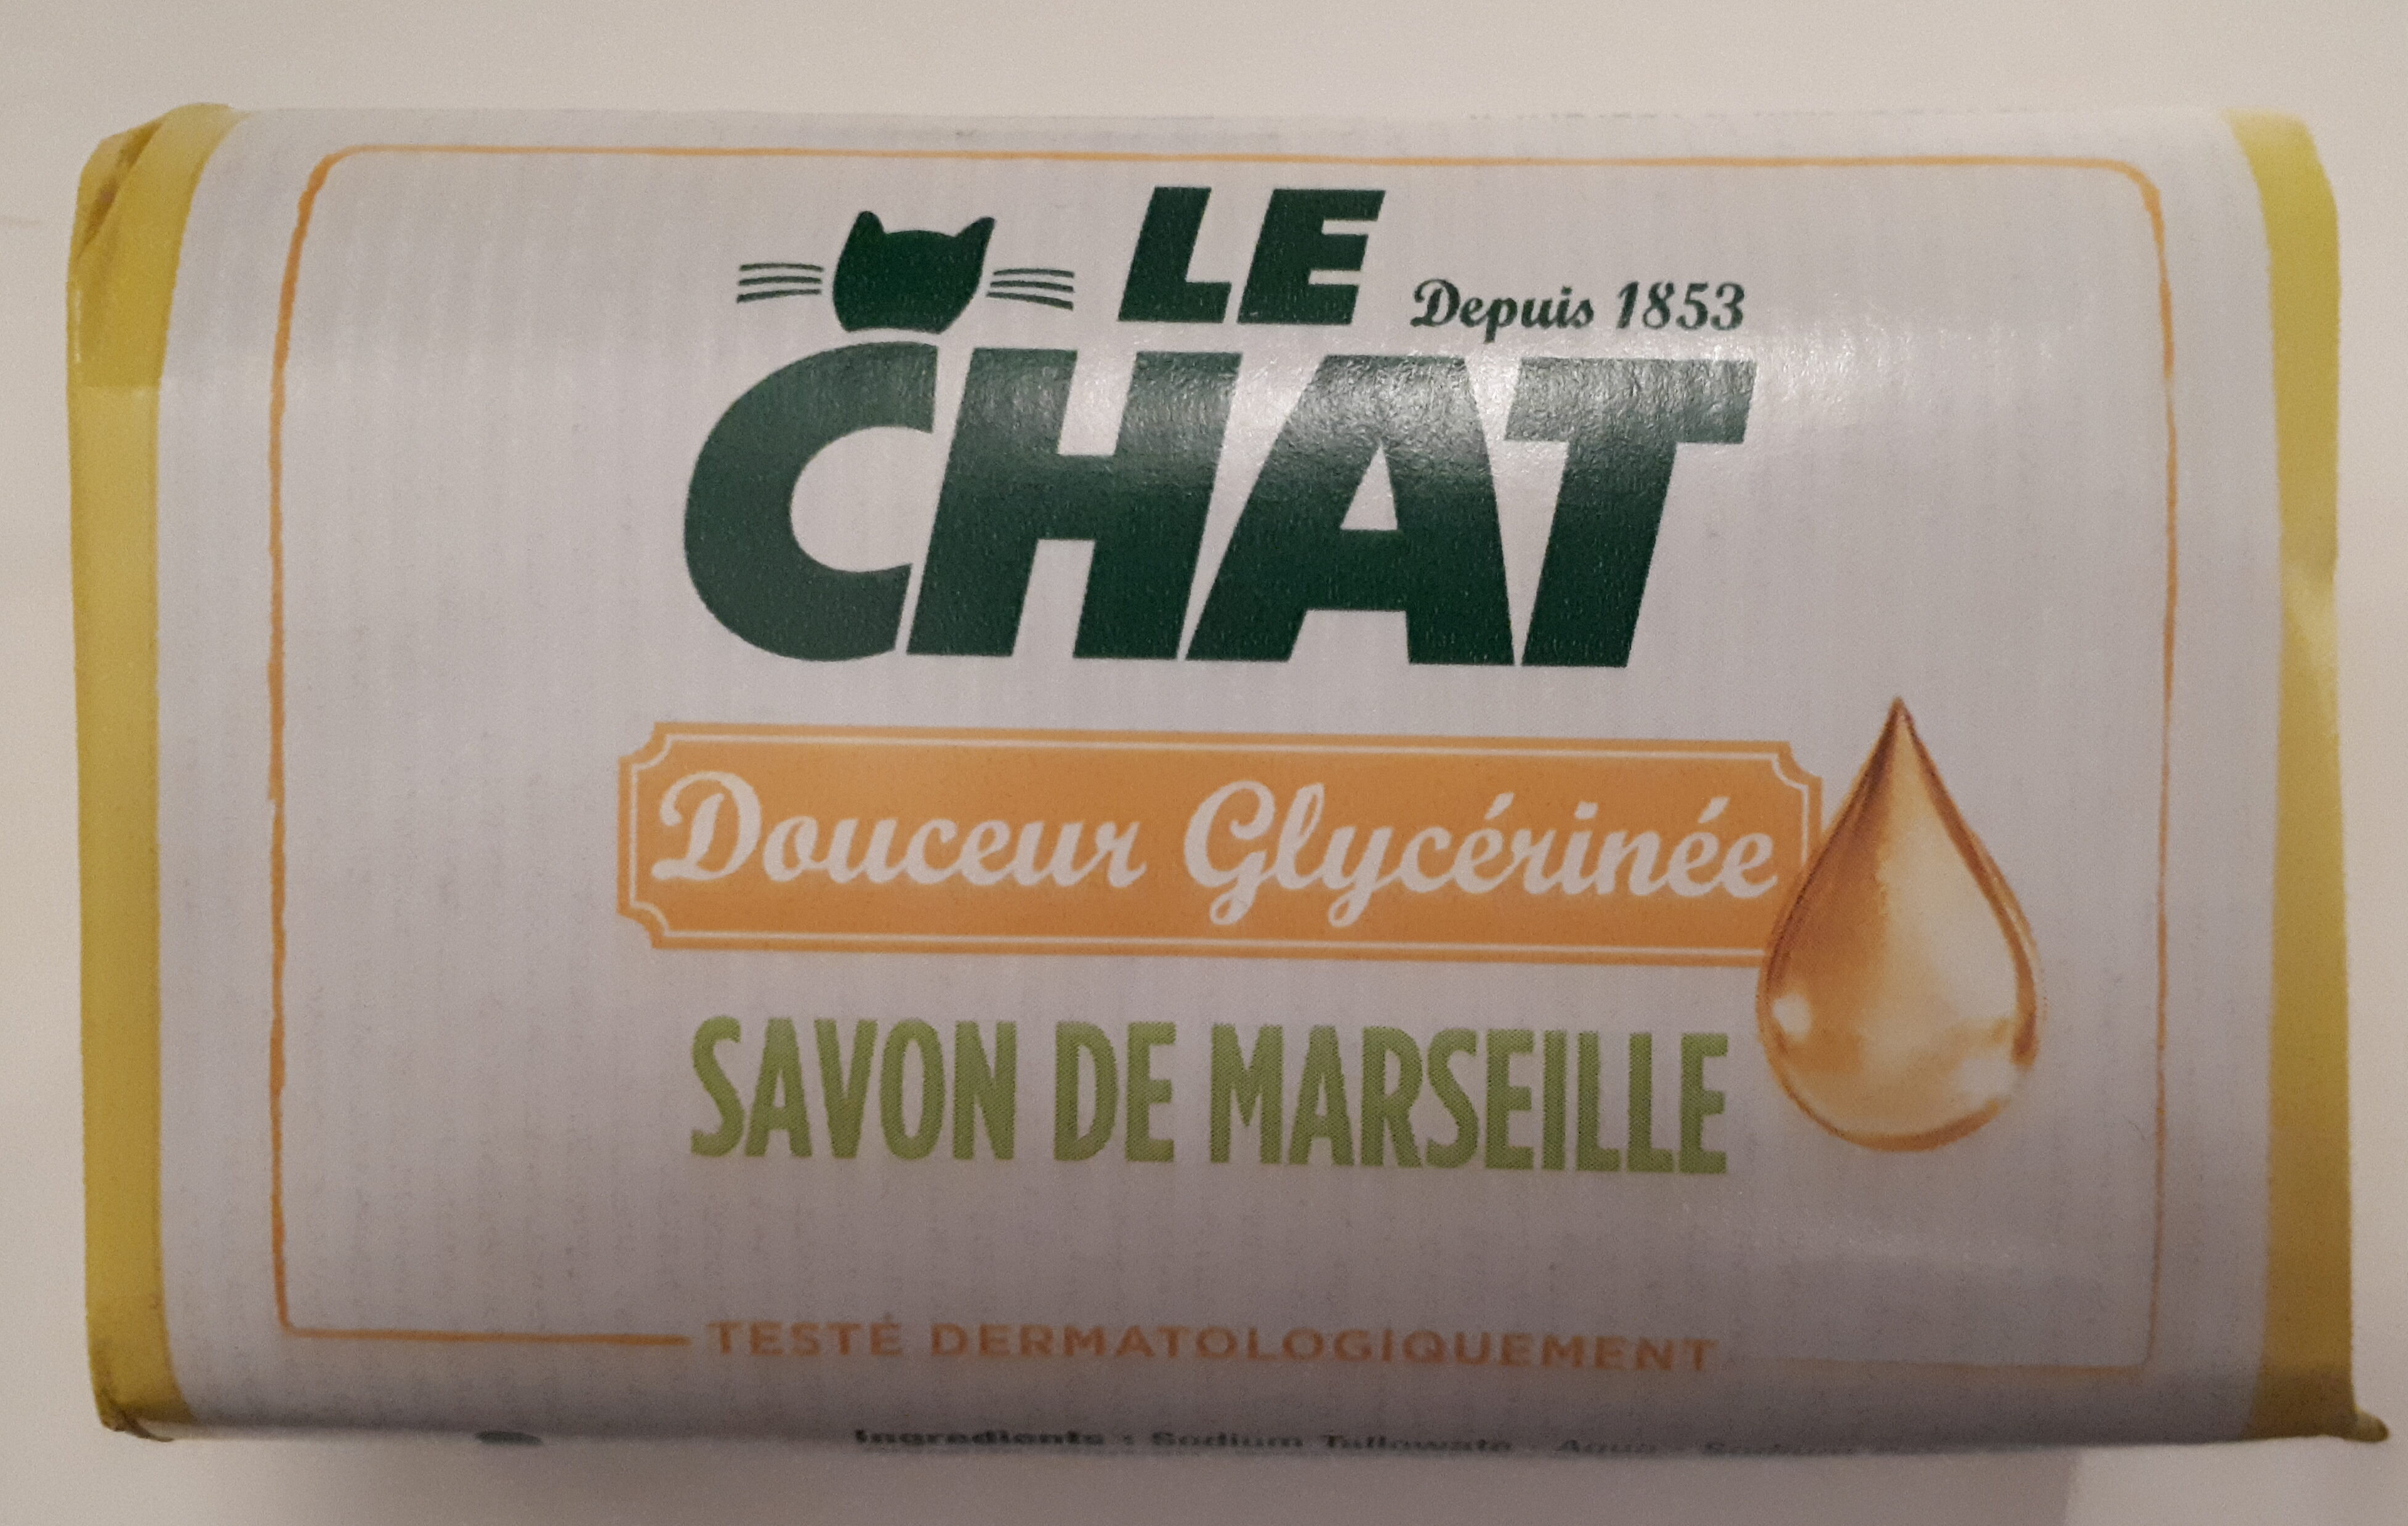 Savon de Marseille Douceur Glycérinée - Product - fr